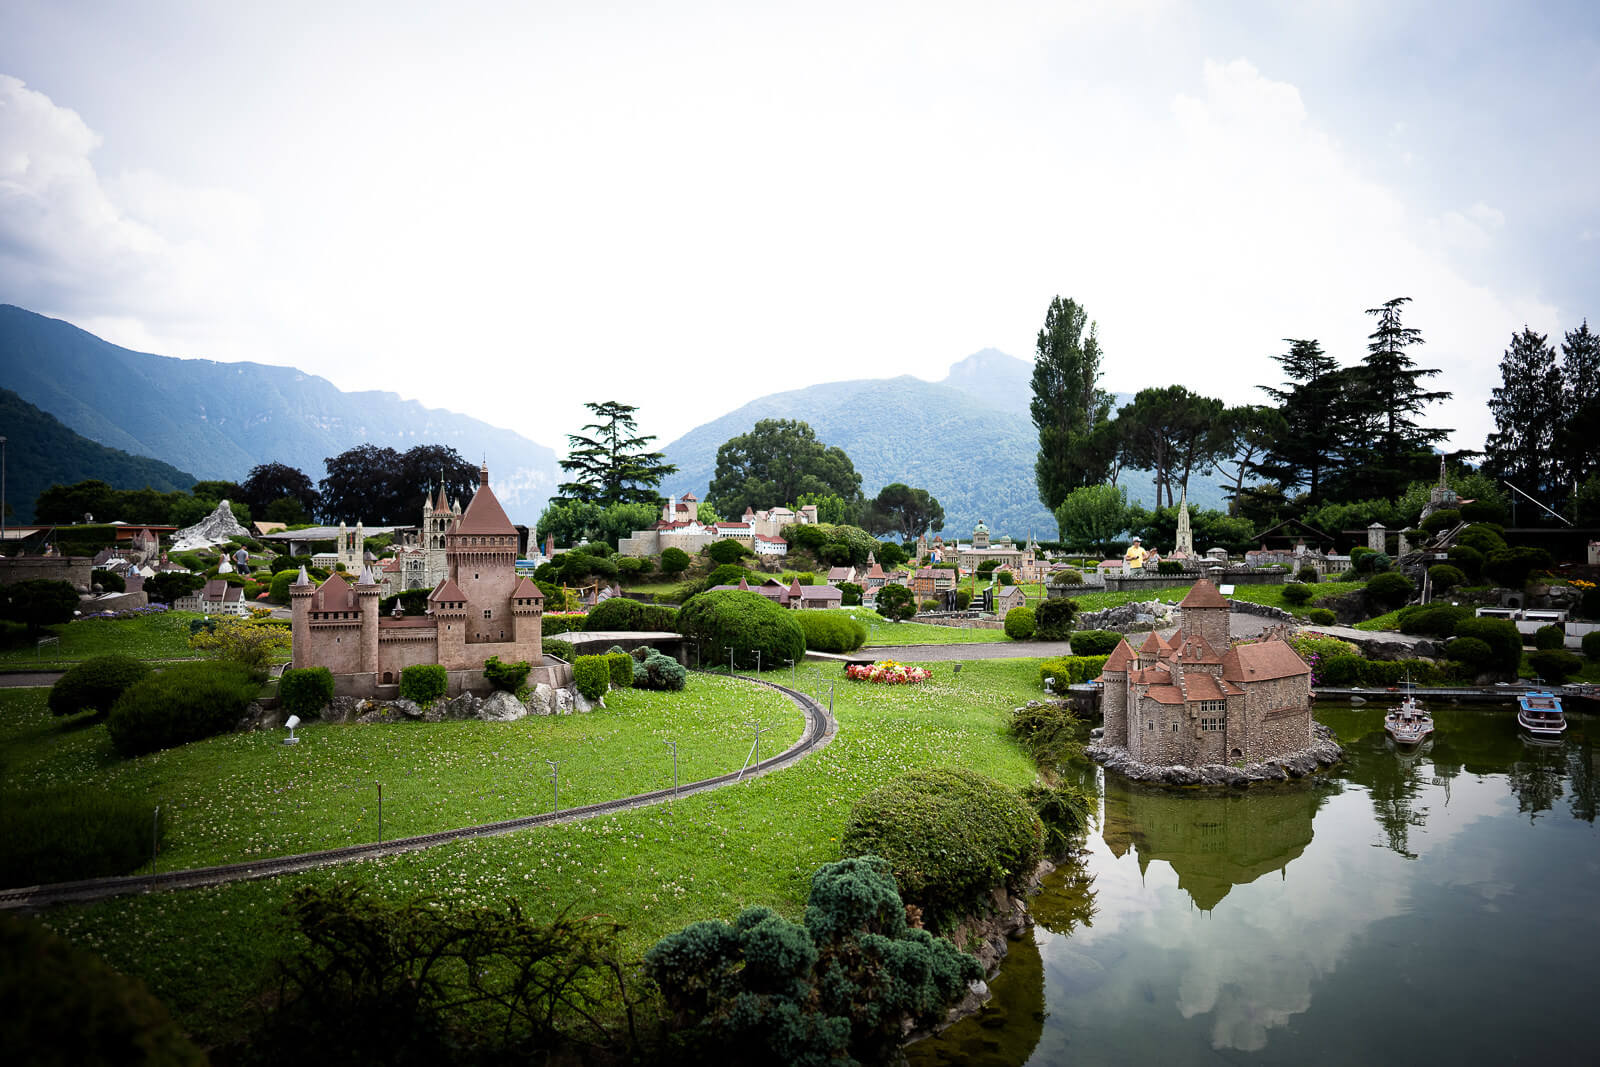 Reisetipps - Review - Urlaub in der Schweiz, in Melide, Lugano 16